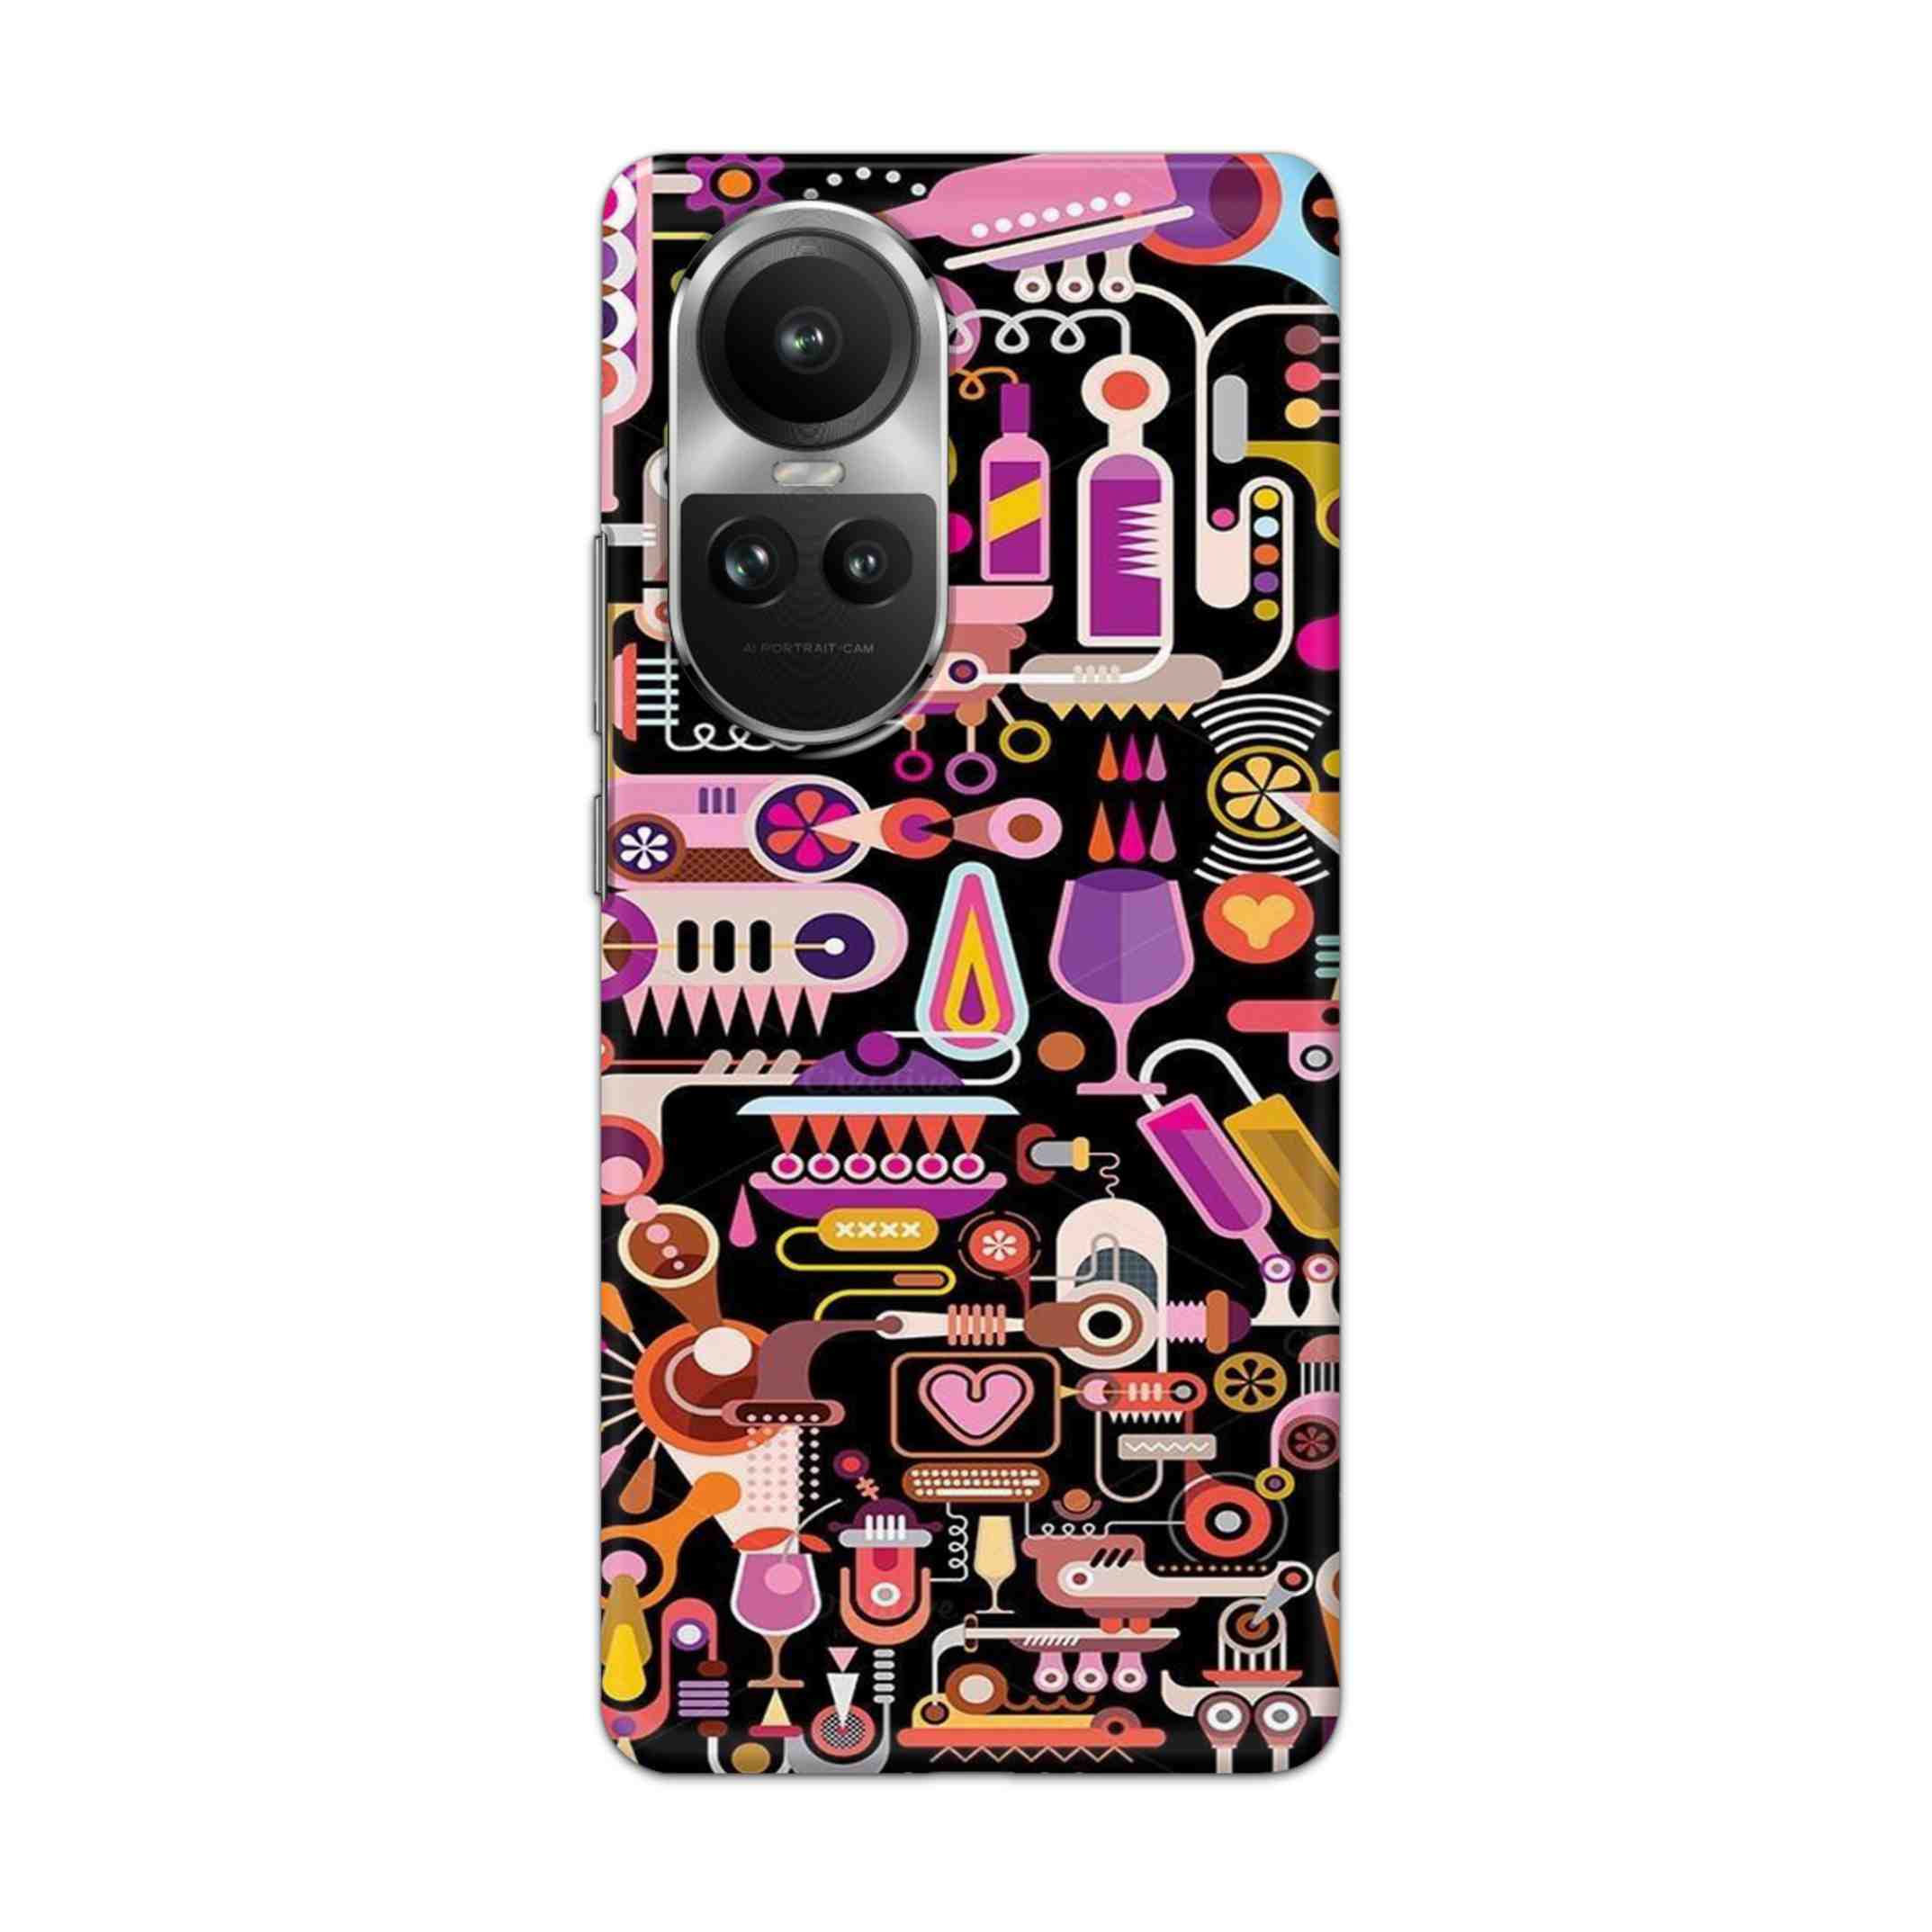 Buy Art Hard Back Mobile Phone Case/Cover For Oppo Reno 10 5G Online